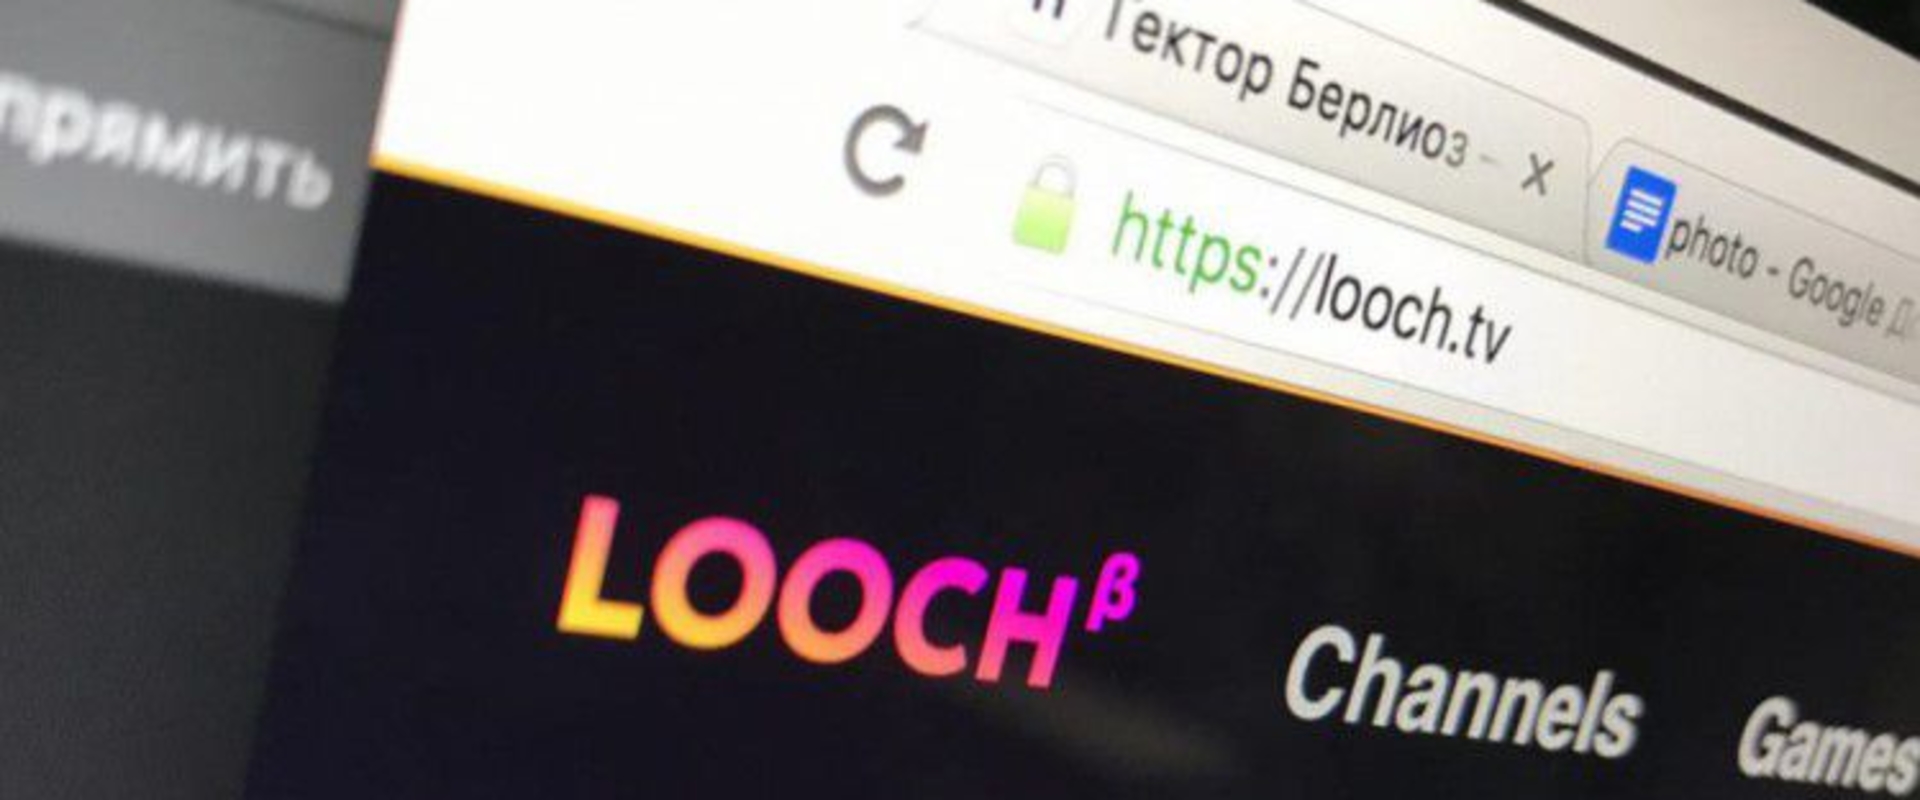 Indul a Looch TV, most már nem csak a Facebook üzent hadat a Twitch-nek